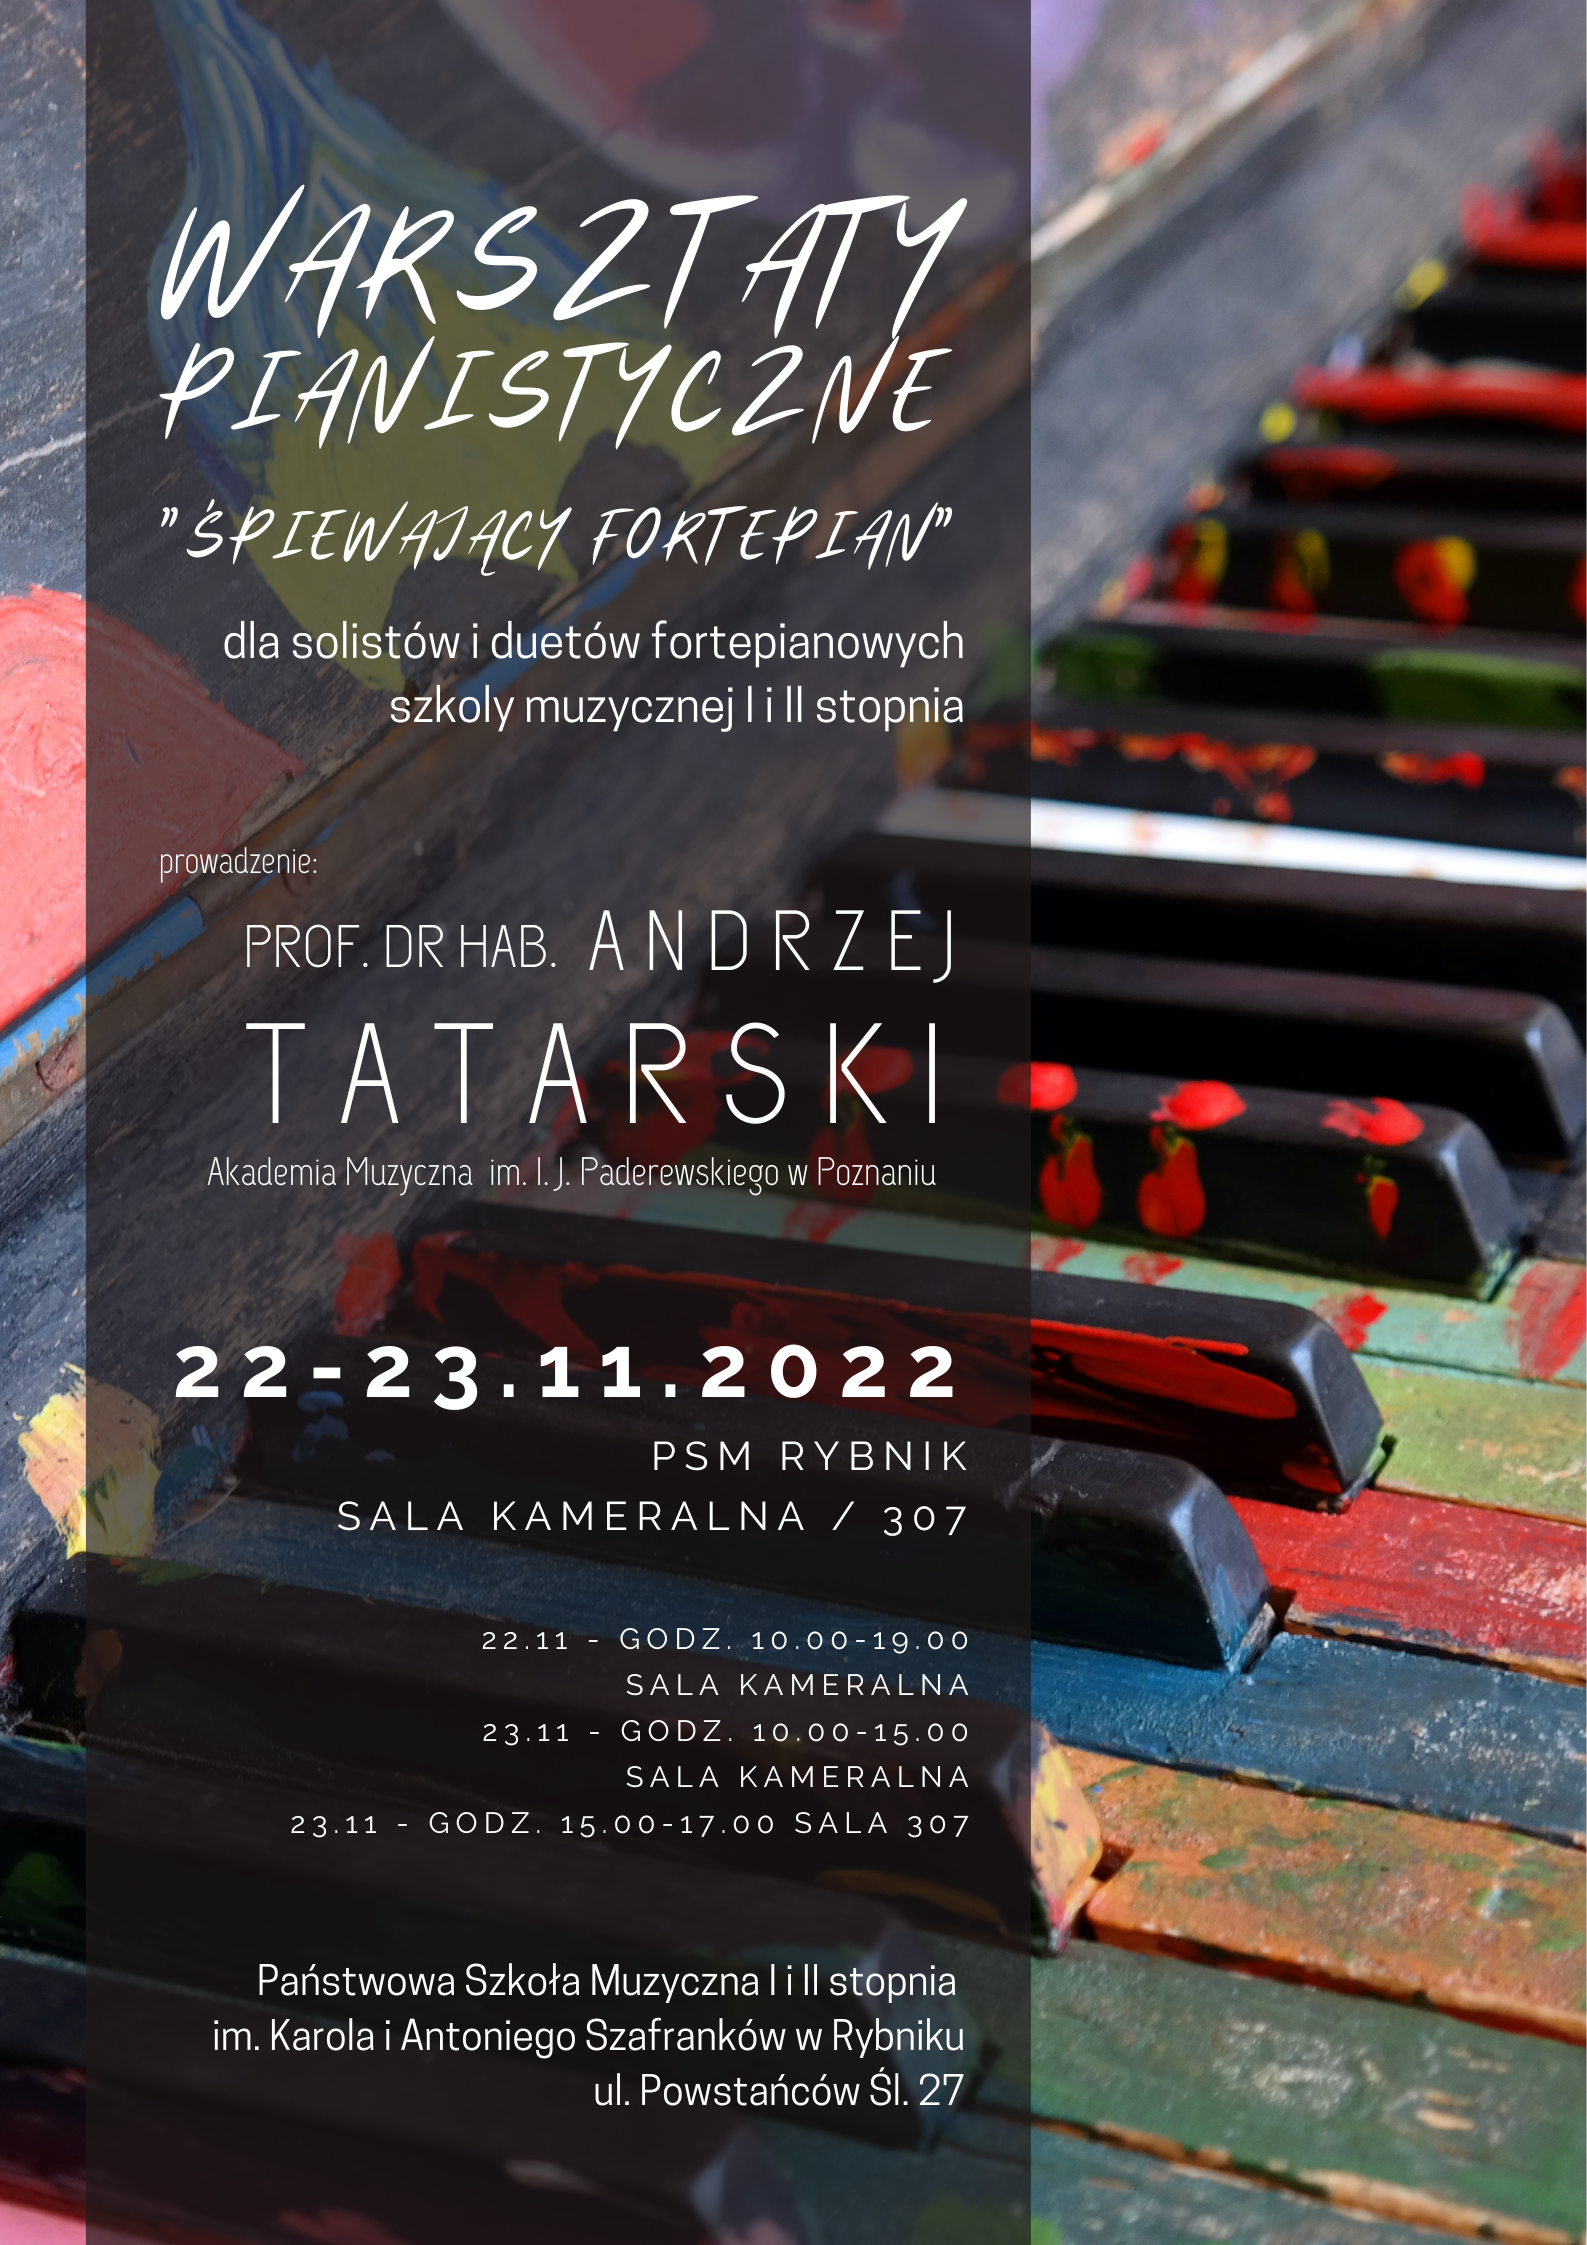 Plakat warsztaty pianistyczne 22-23.11.2022